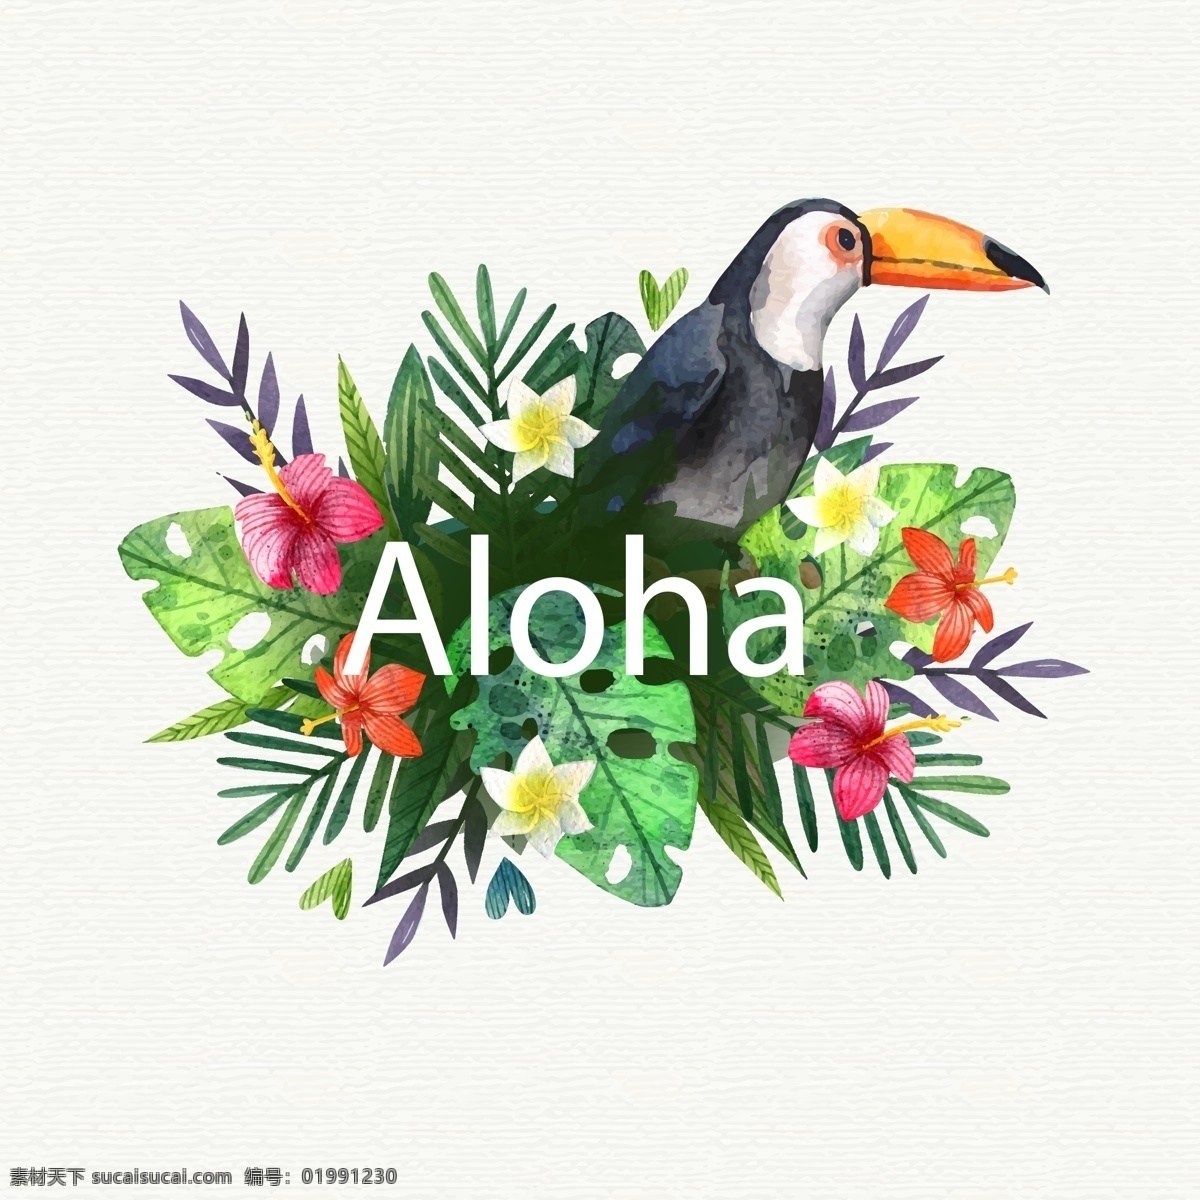 创意 夏威夷 大 嘴 鸟 花卉 矢量图 扶桑花 鸡蛋花 棕榈树叶 大嘴鸟 底纹边框 花边花纹